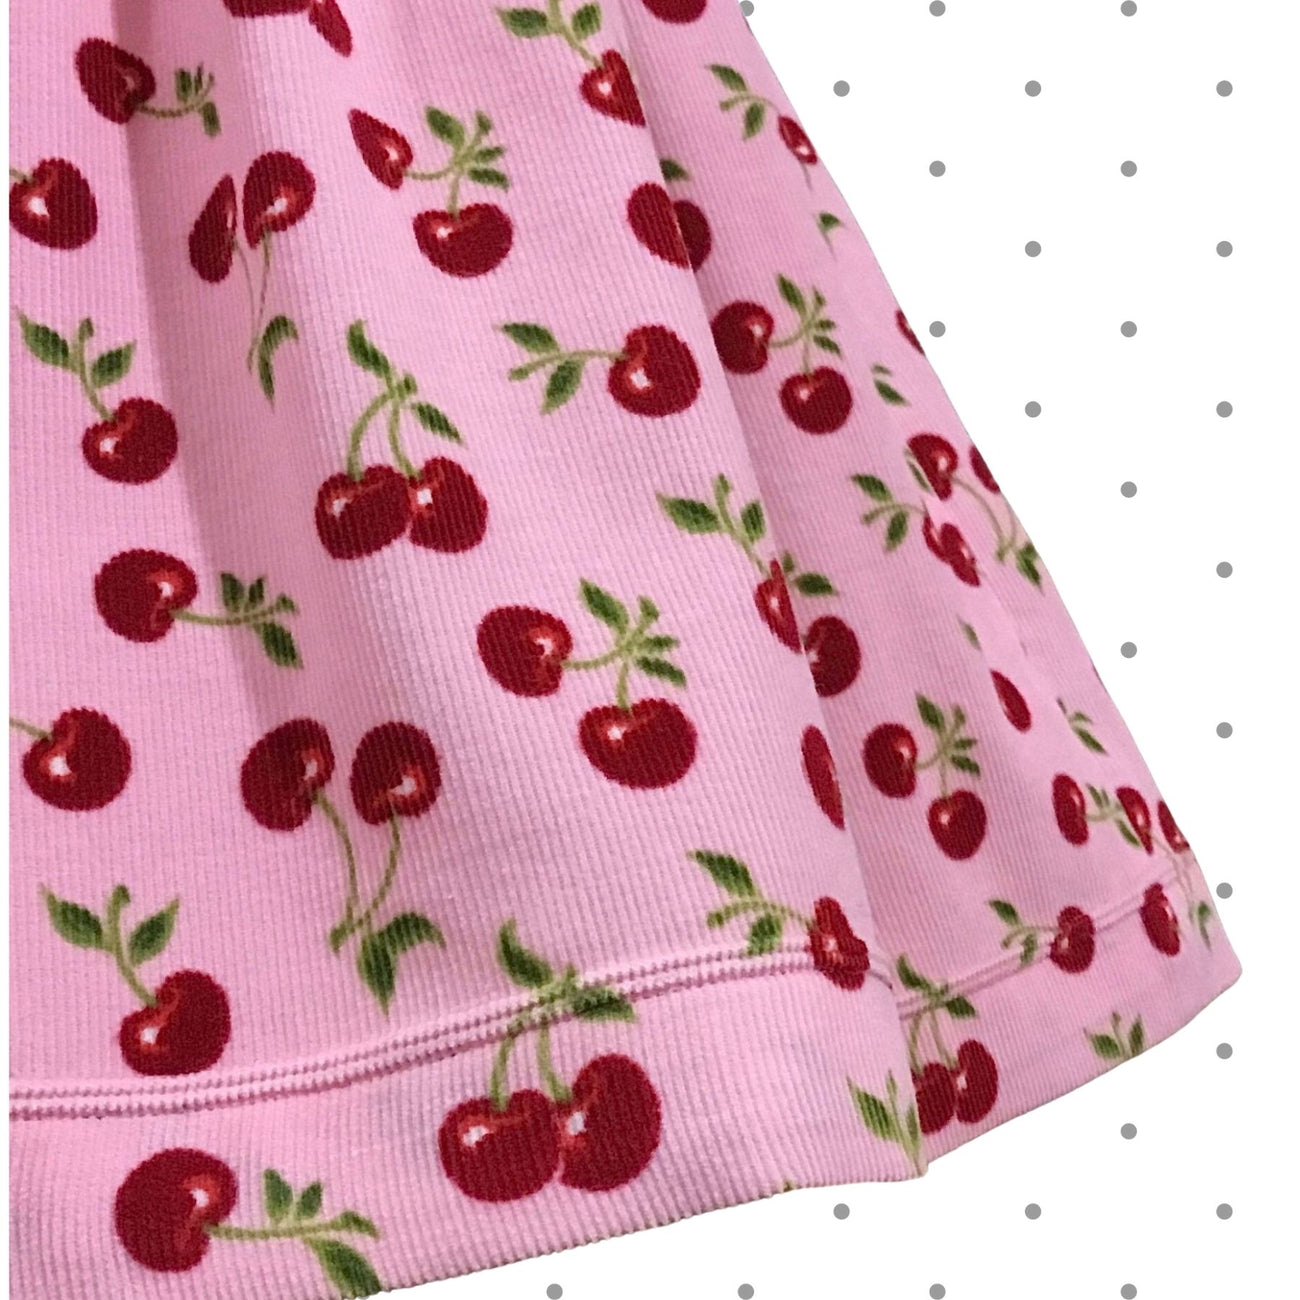 Cherries Jubilee Jumper ~ Size 3T